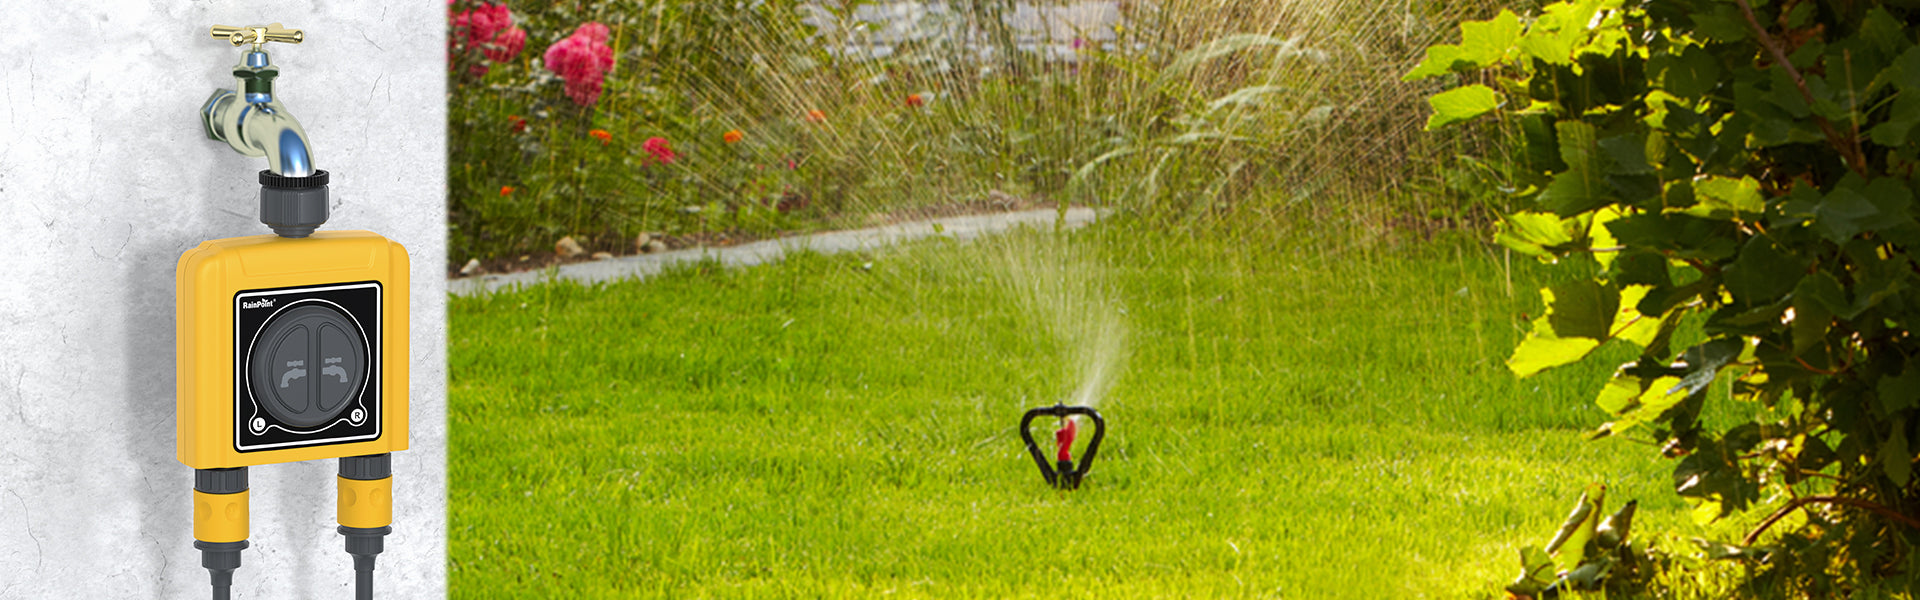 irrigation system installation